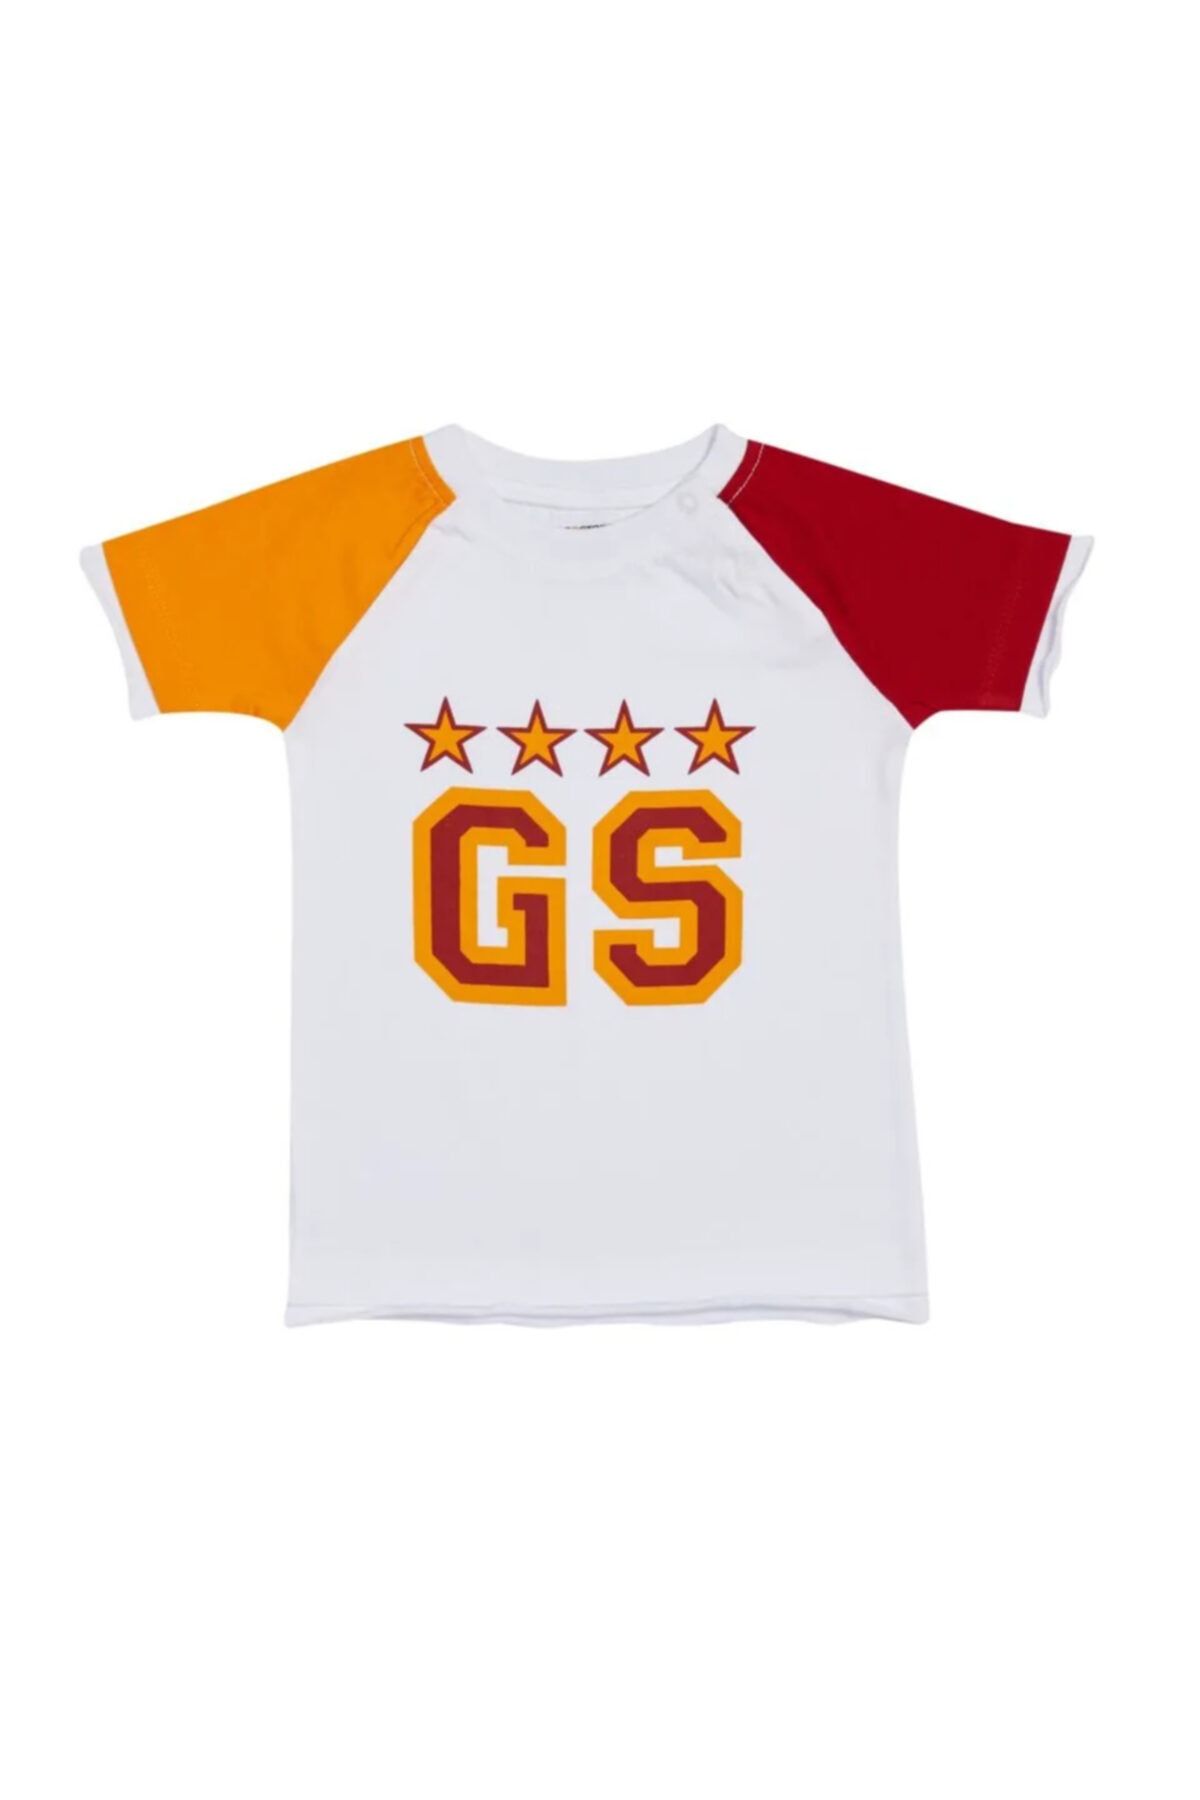 Galatasaray Galatasaray Unisex Bebek Tshirt